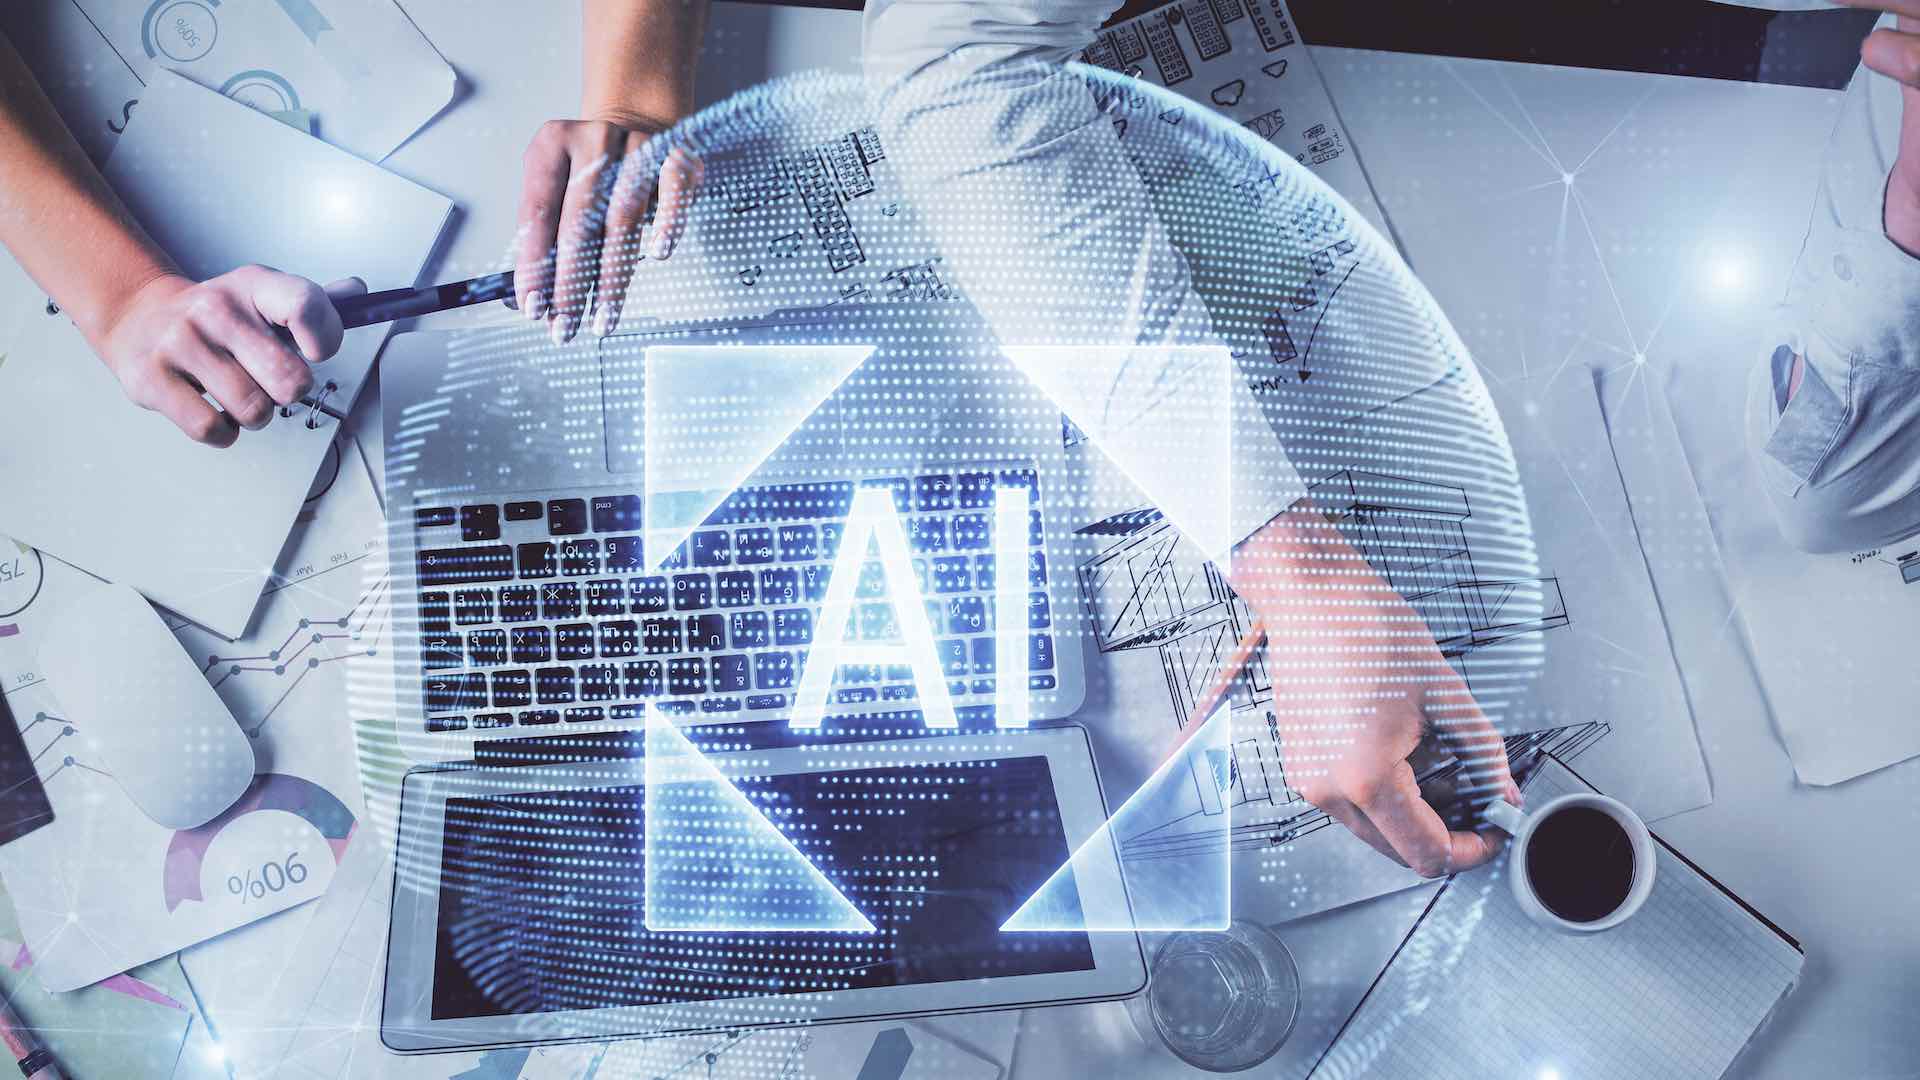 2023 میں AI کا ابھرتا ہوا اثر، ہمارے کام کرنے اور ملازمت کرنے کے طریقے کو تبدیل کر رہا ہے۔